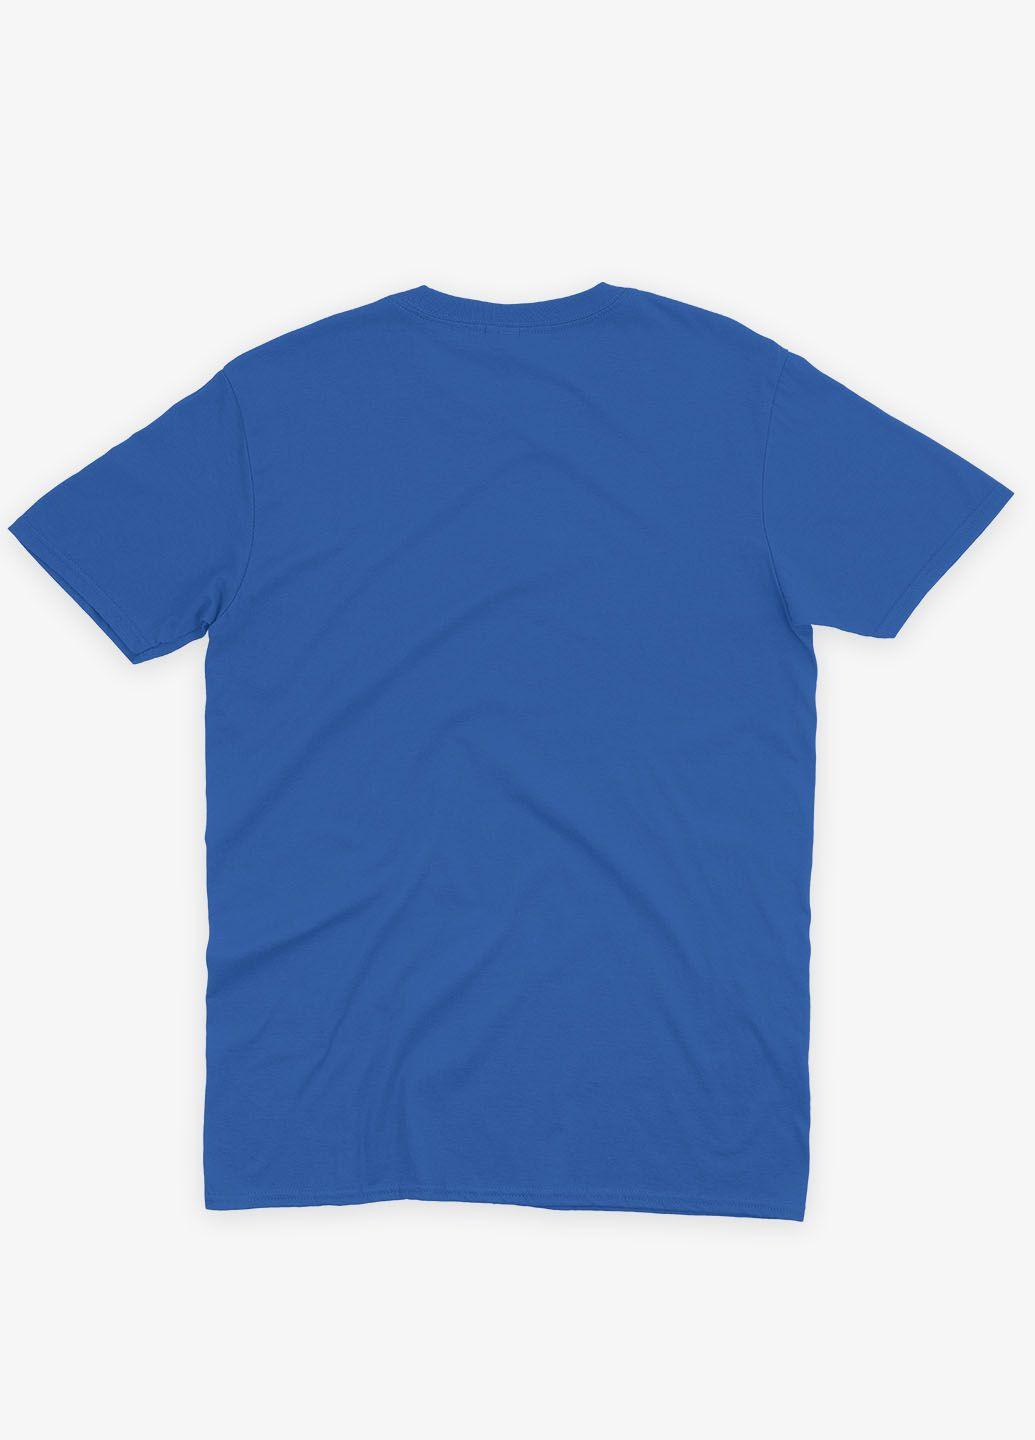 Синяя демисезонная футболка для мальчика с принтом супергероя - человек-паук (ts001-1-brr-006-014-083-b) Modno